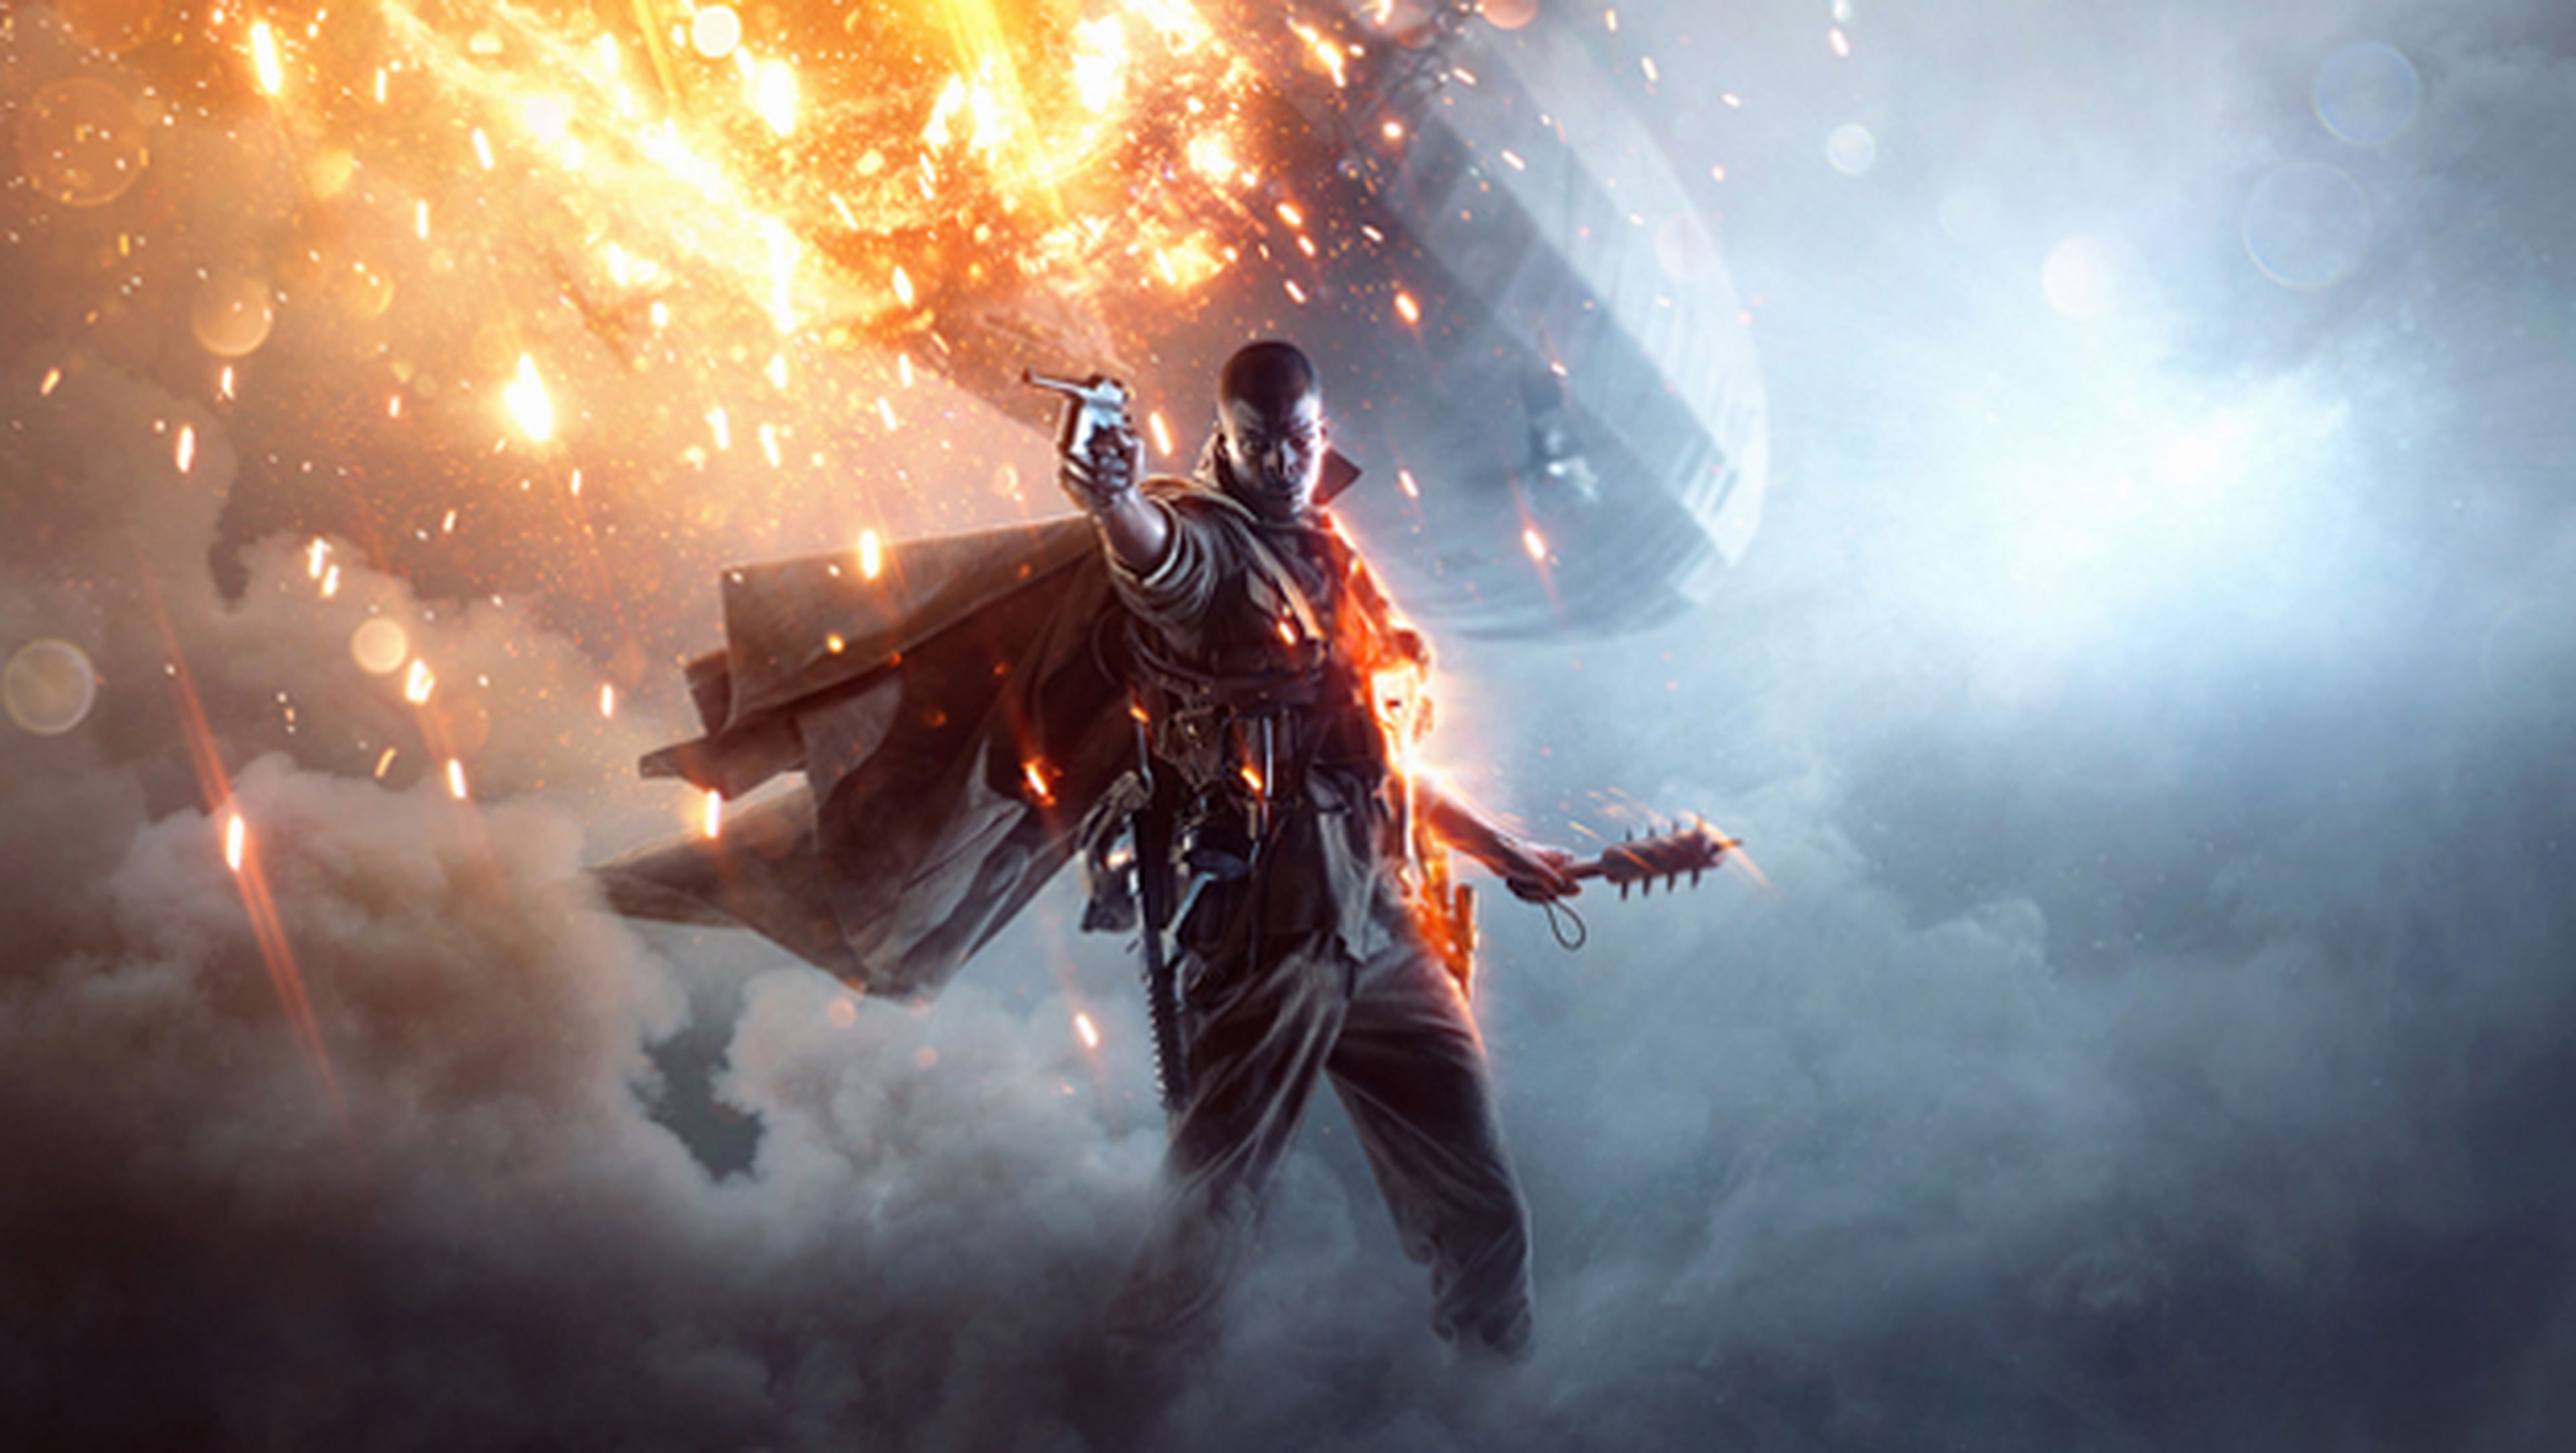 Oferta en videojuegos: descargar Battlefield 1 para ordenador y Xbox One gratis